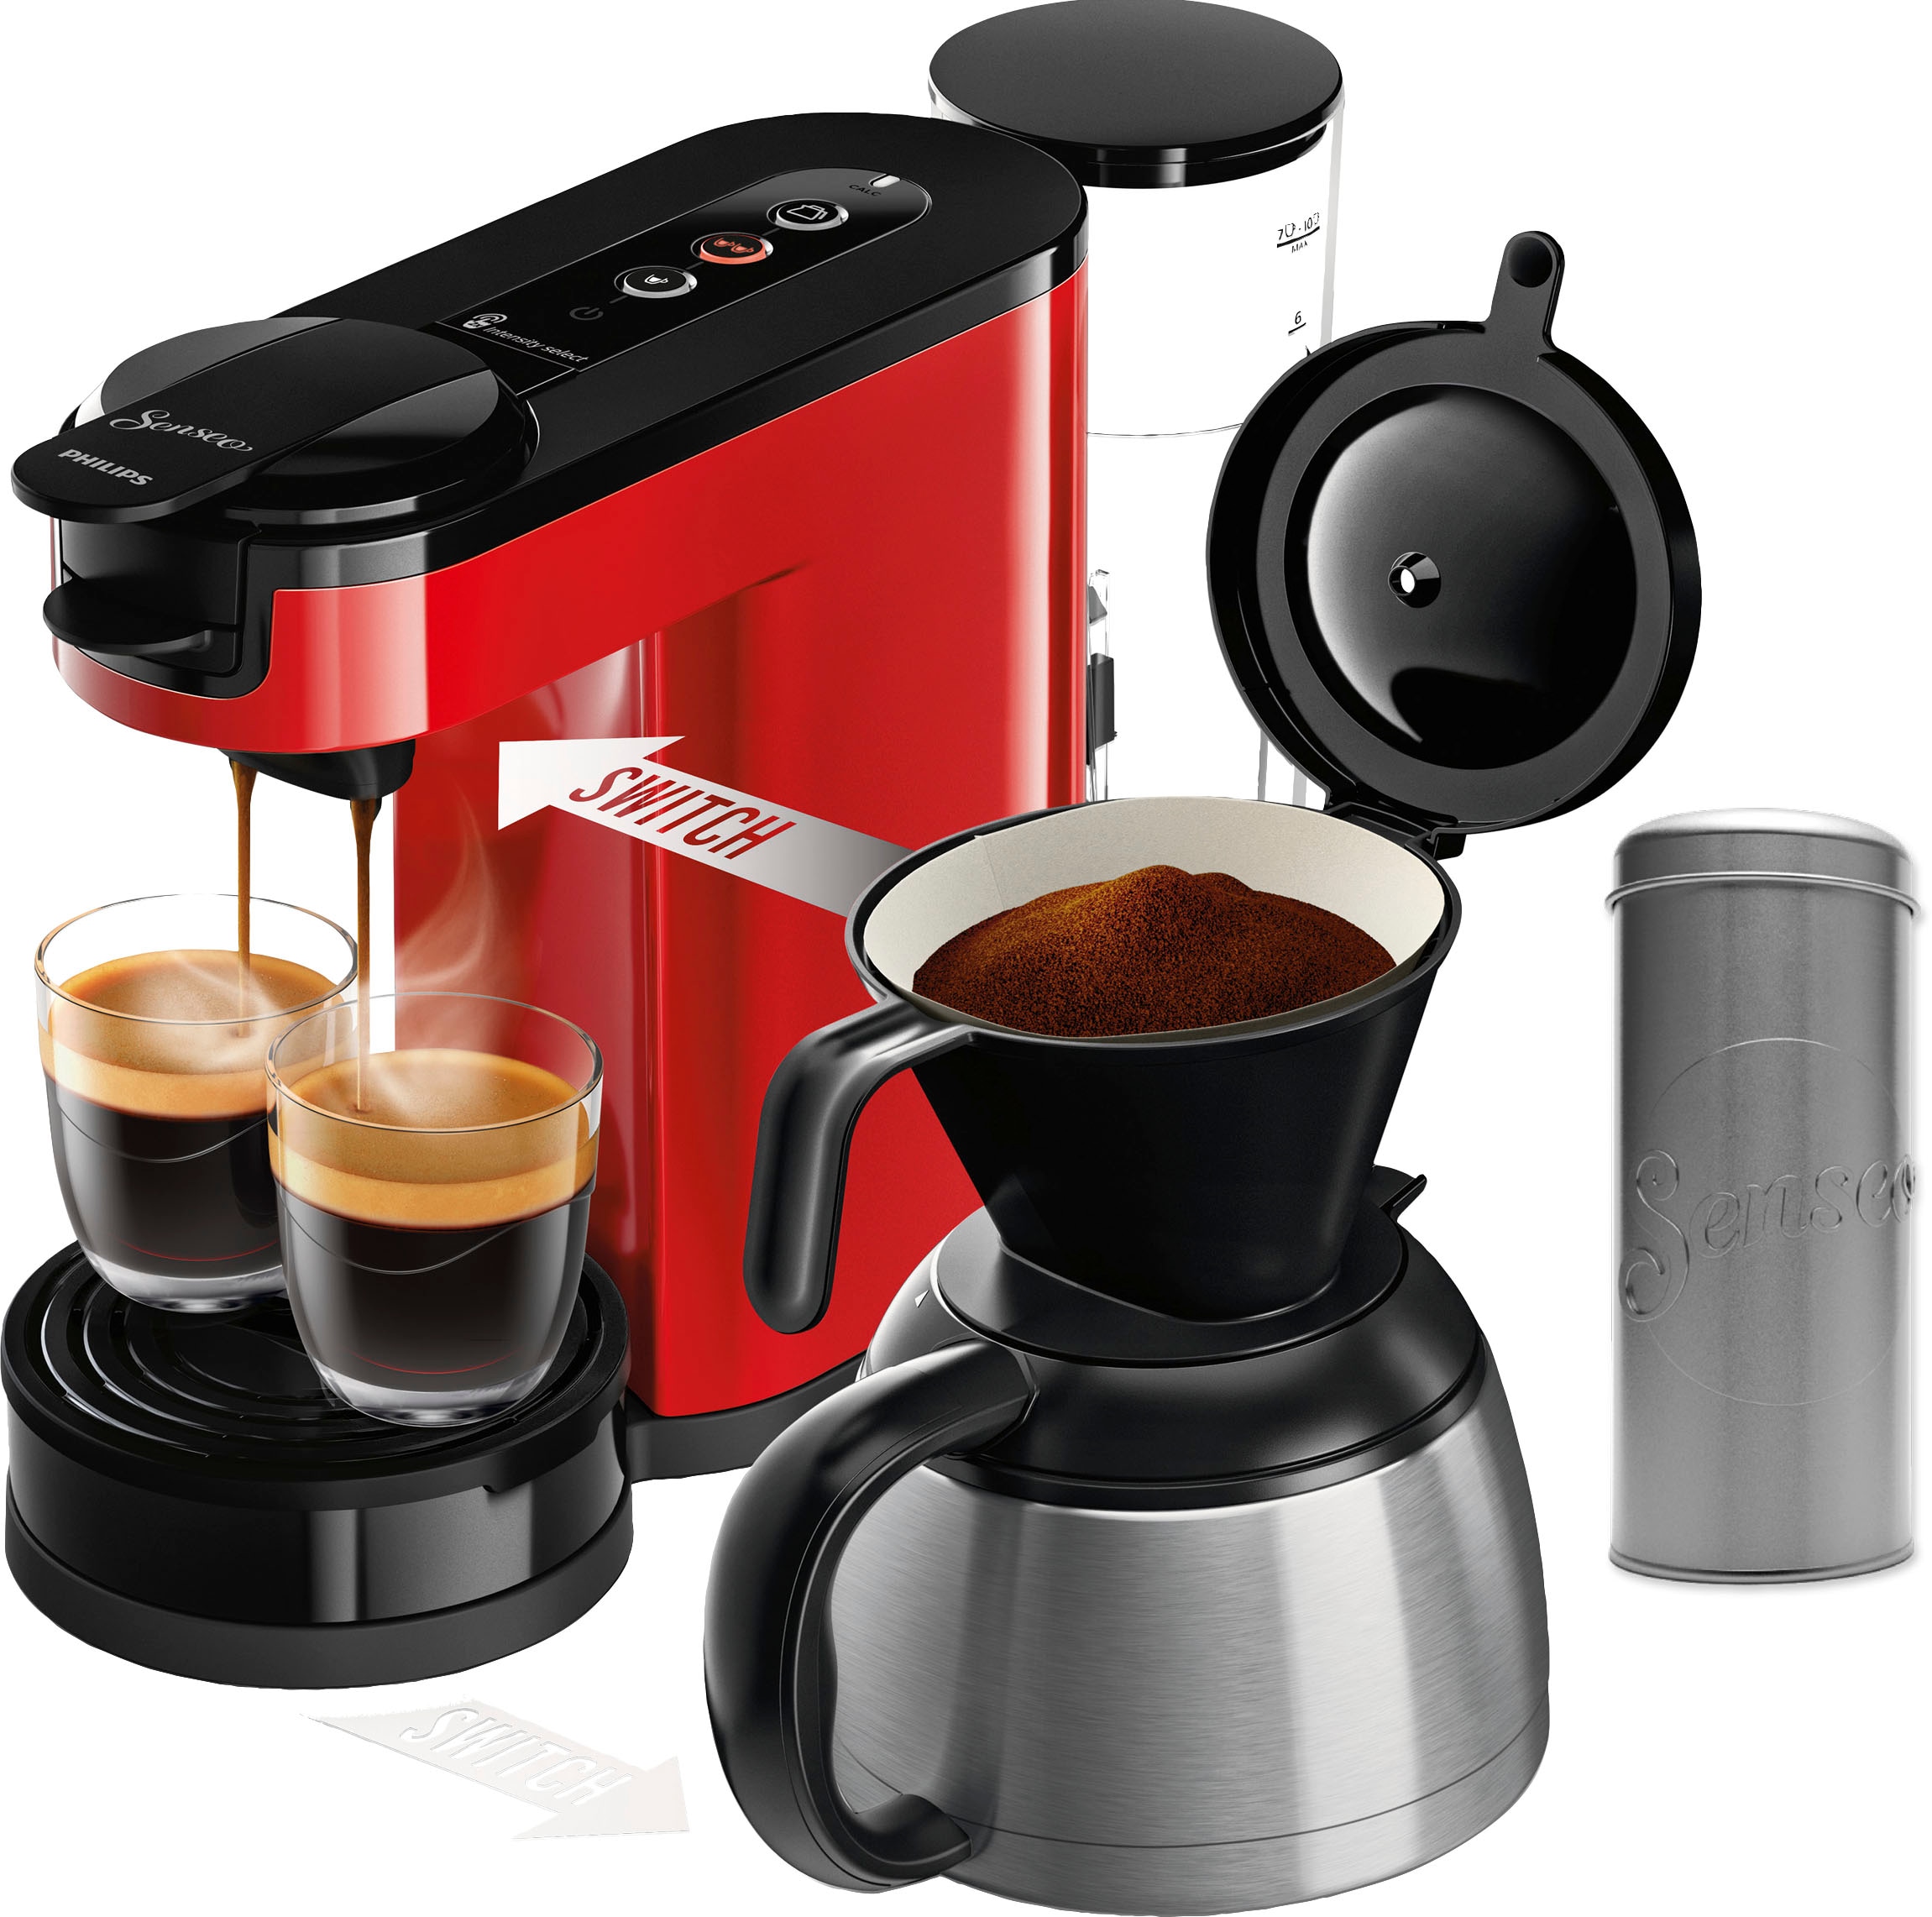 Philips Senseo Kaffeepadmaschine "Switch HD6592/84", 1 l Kaffeekanne, inkl. Kaffeepaddose im Wert von 9,90 € UVP